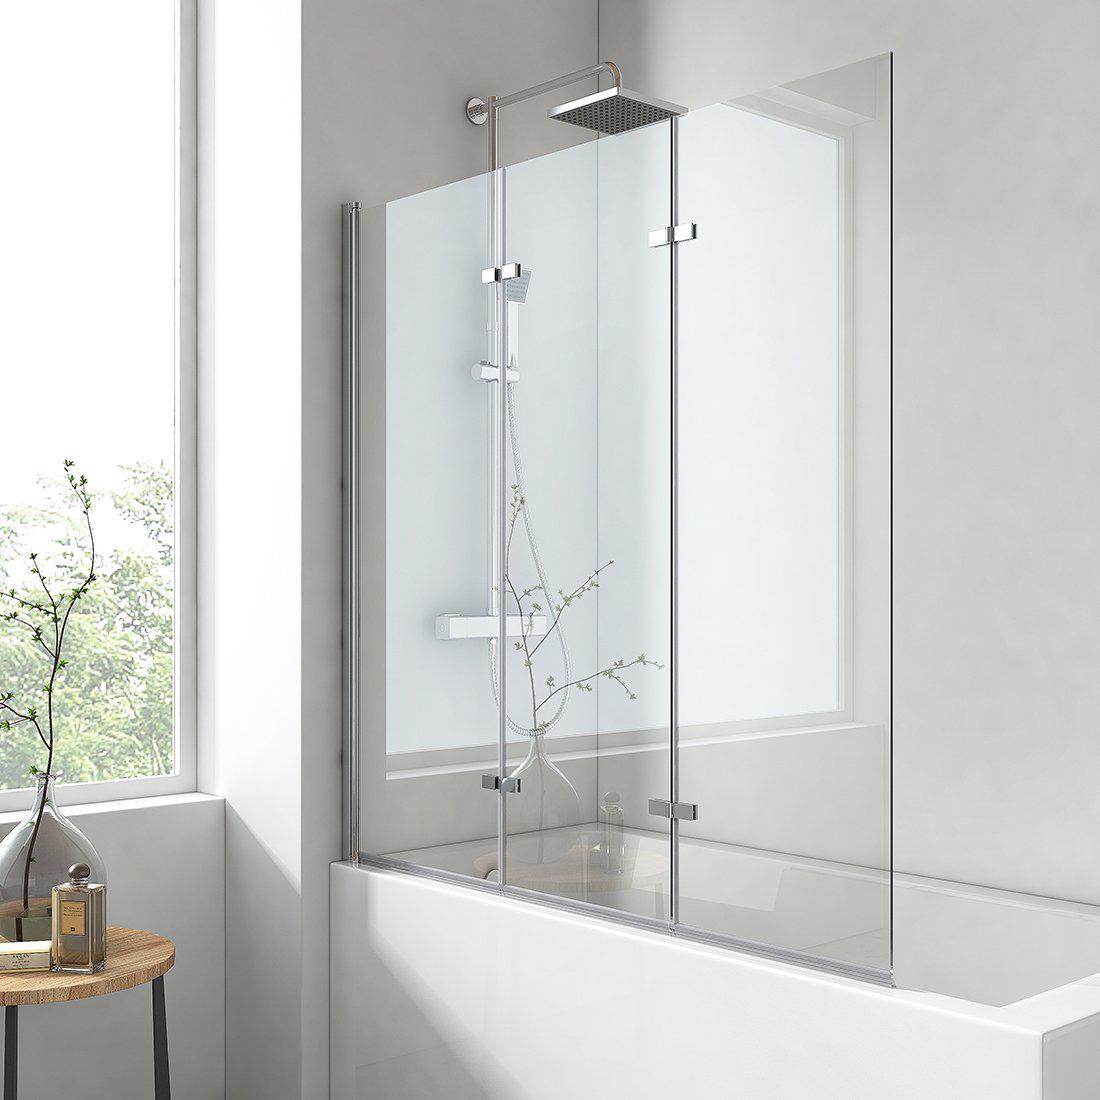 EMKE Duschwand für Badewannen (3-teilig faltbar, in 2 Größen verfügbar) 120×140